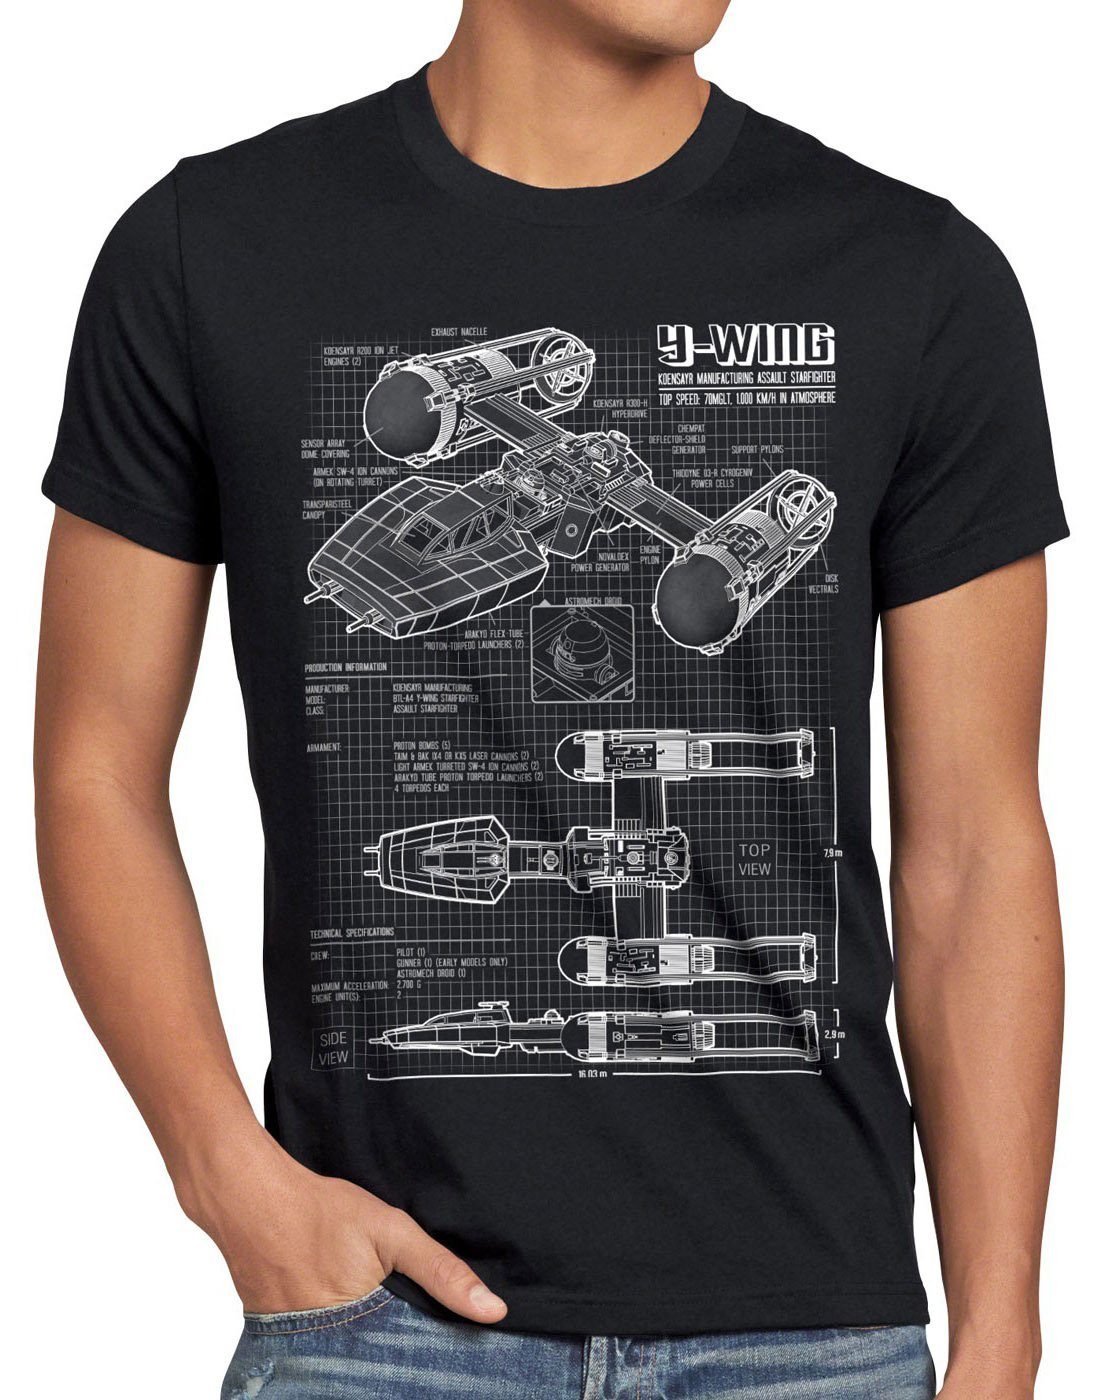 style3 Print-Shirt Herren T-Shirt Y-Wing rebellion star krieg sterne der  wars battlefront x-wing